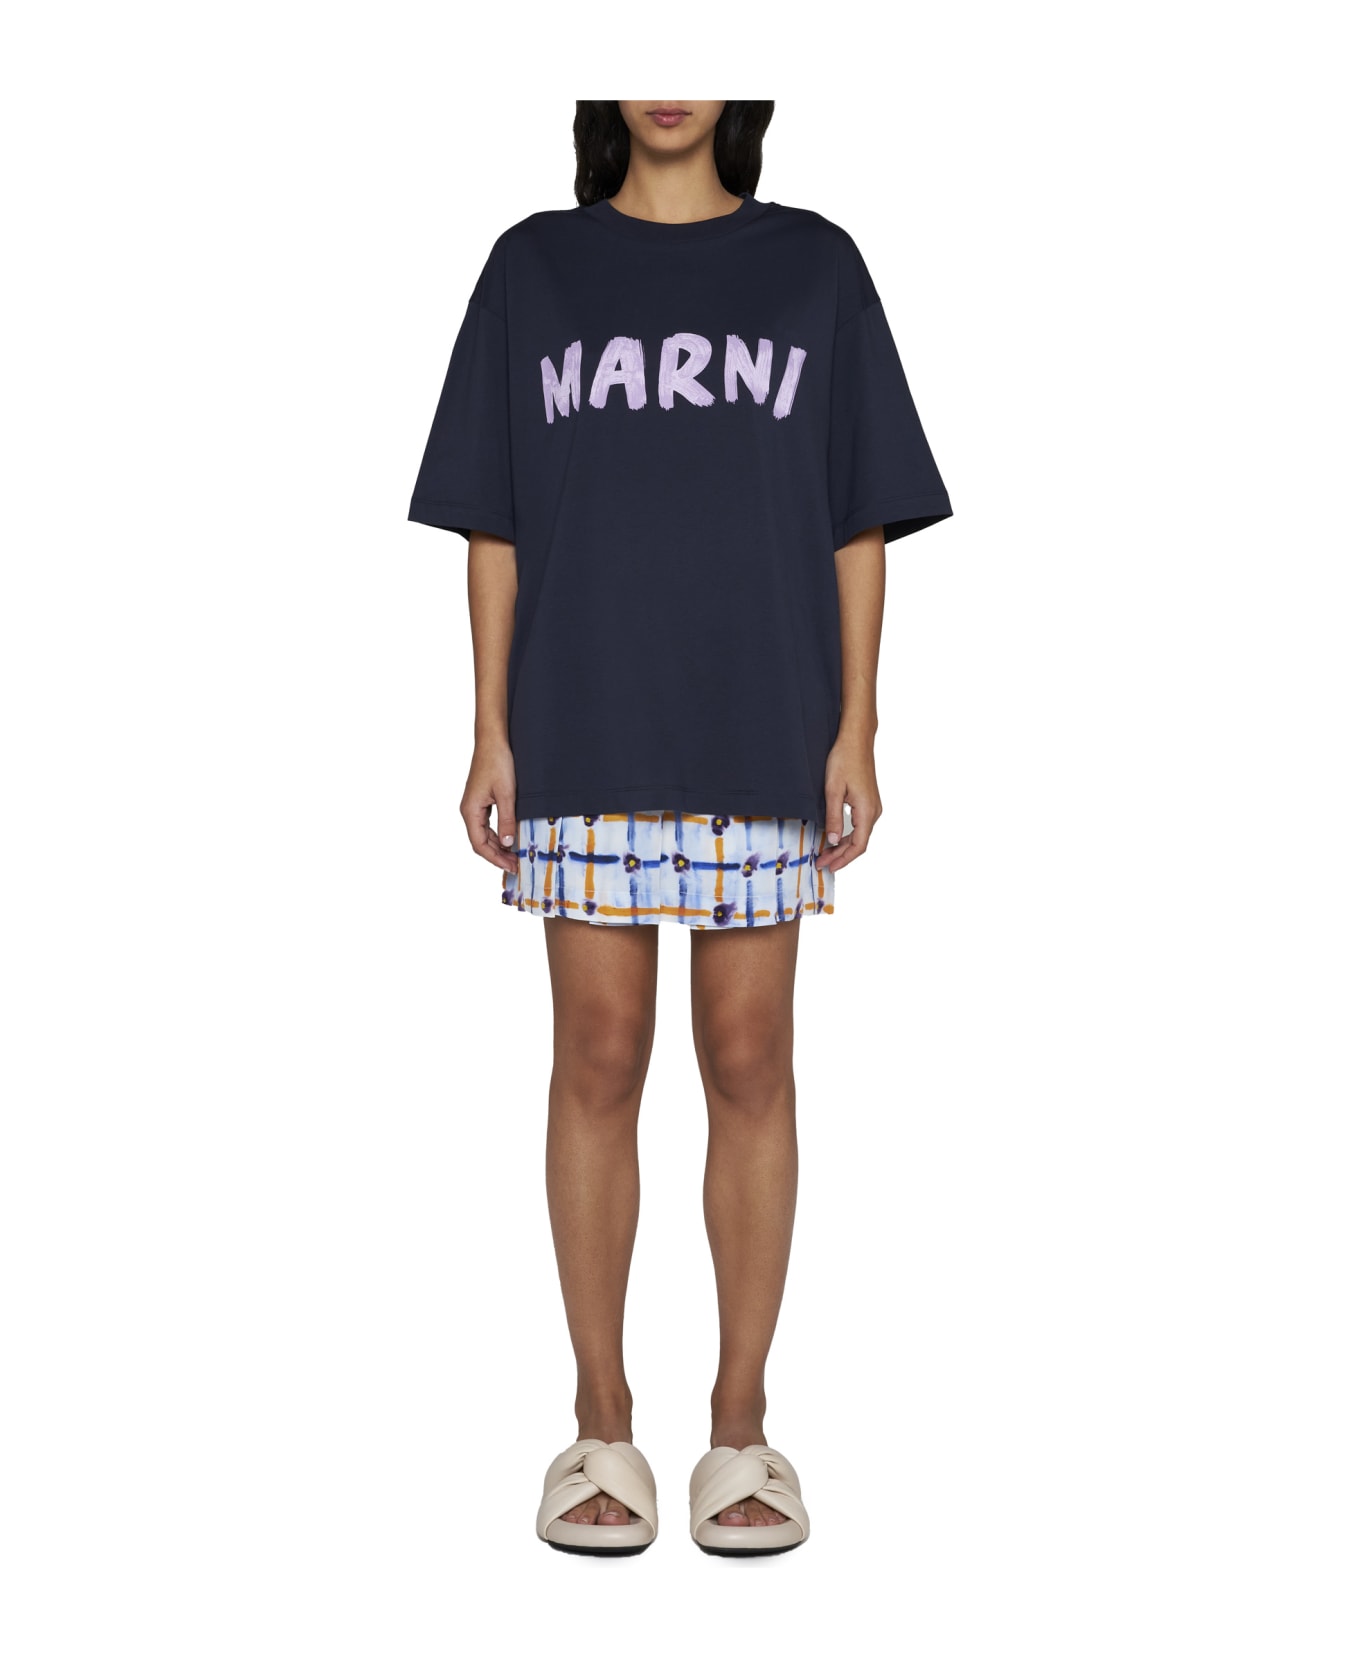 Marni T-Shirt - Blublack